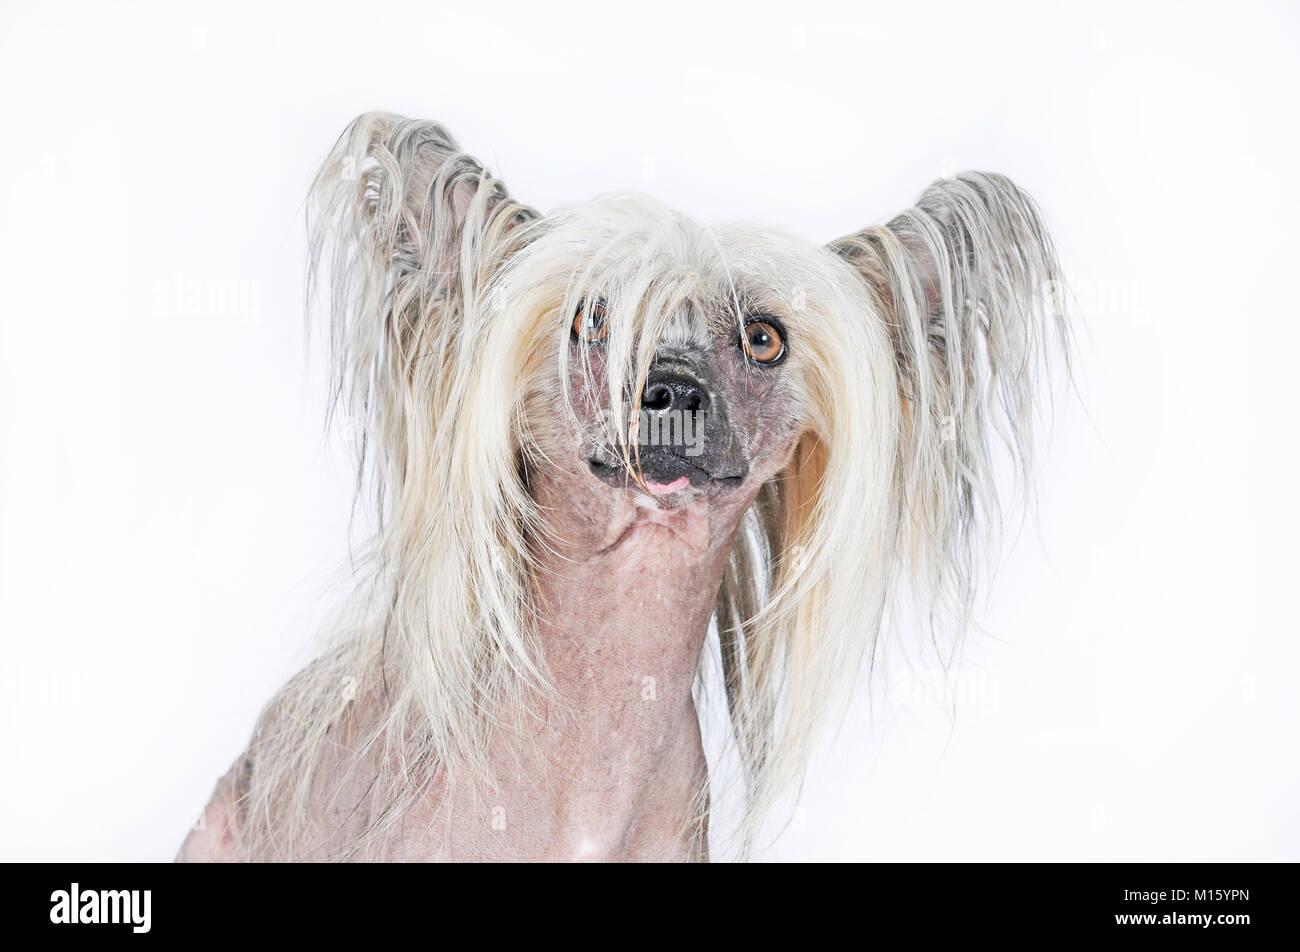 Dog breed Chinese Crested Hairlessmale dogportraitstudio shot